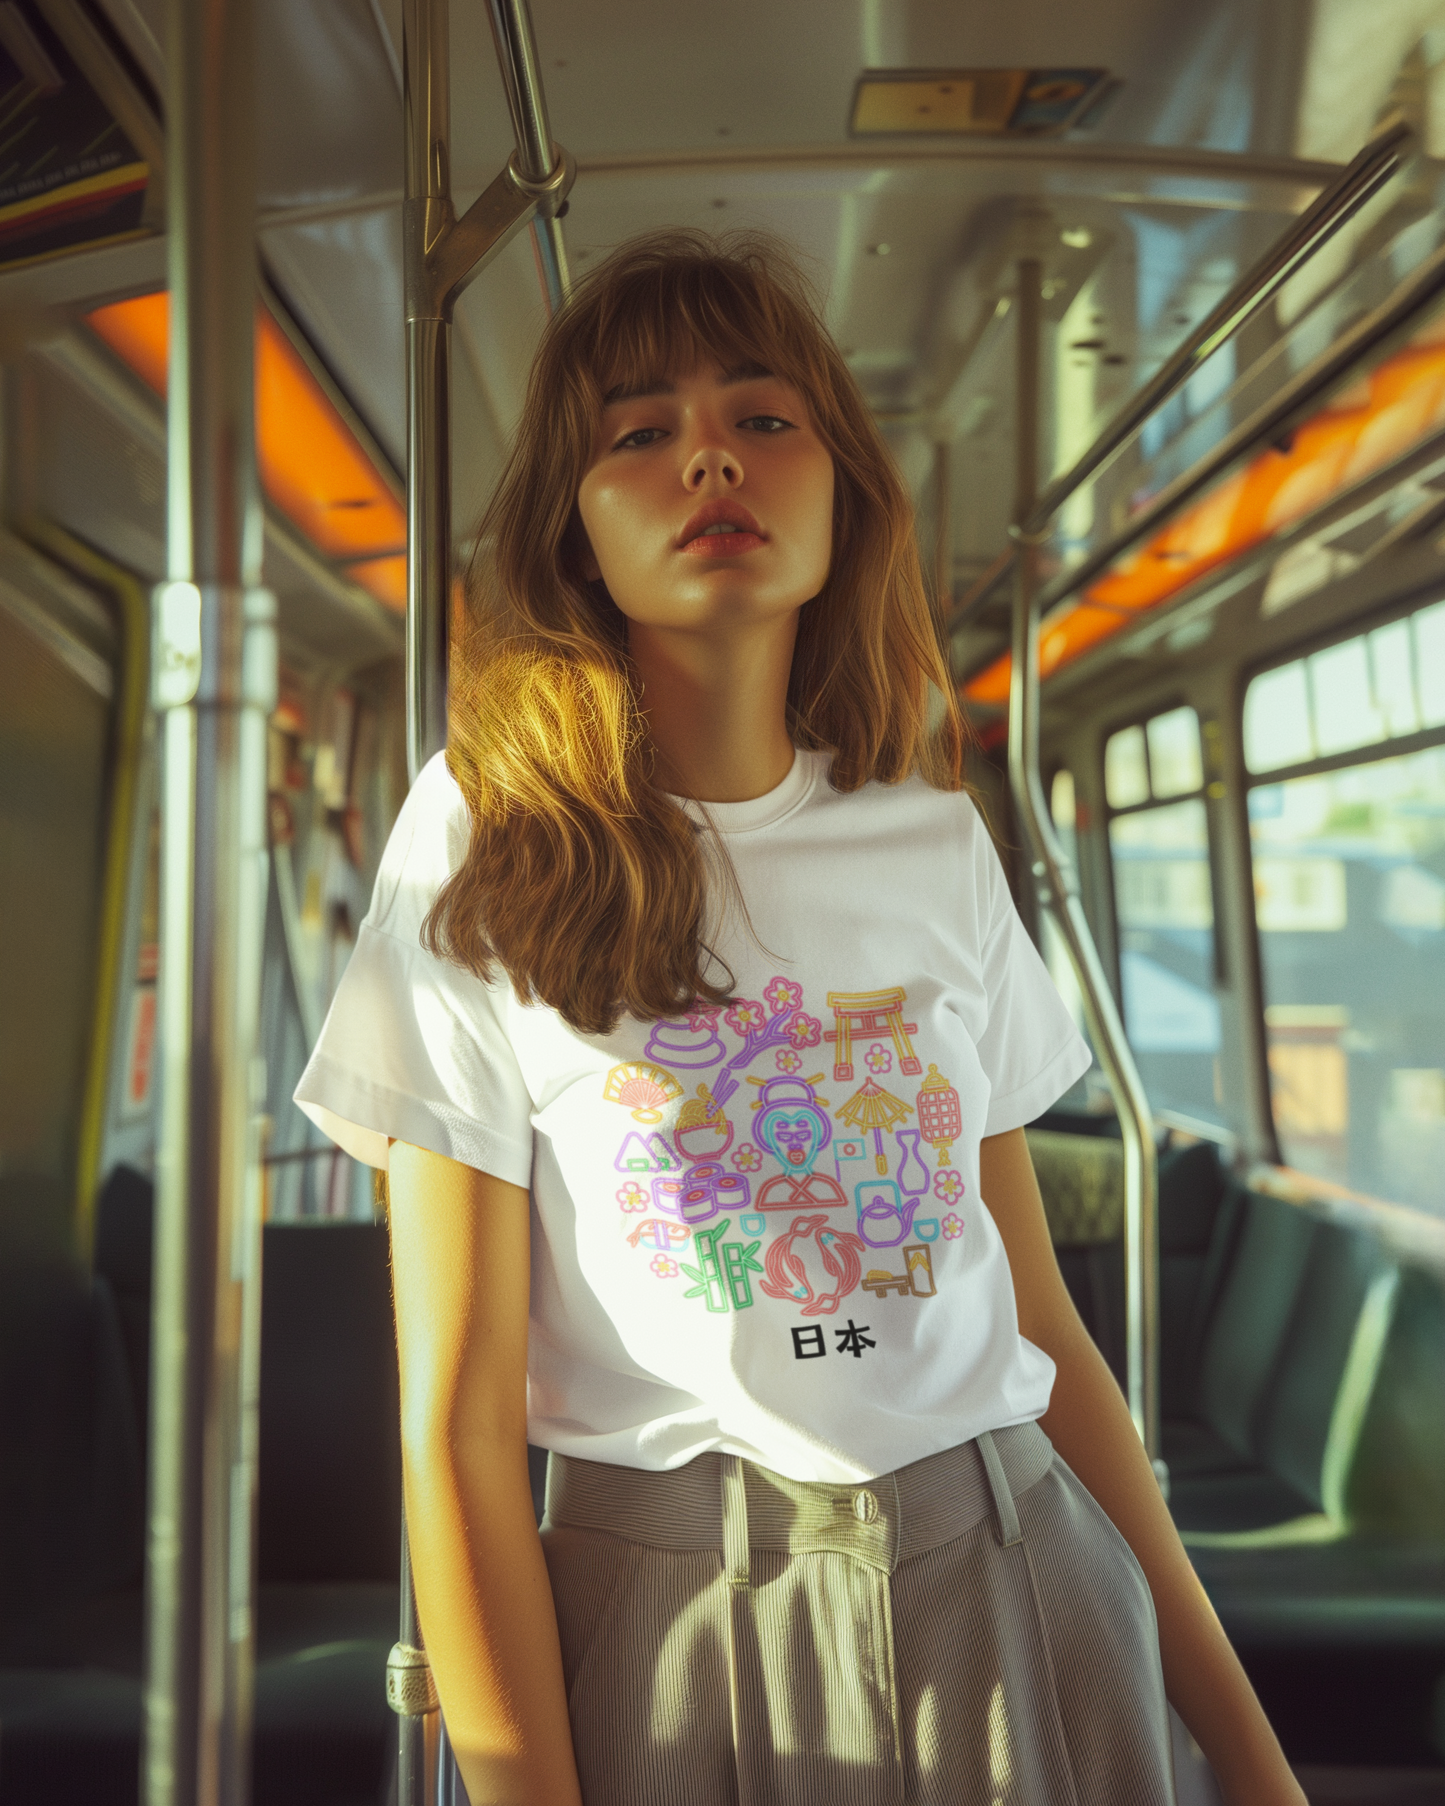 Pop Art Japan t-shirt